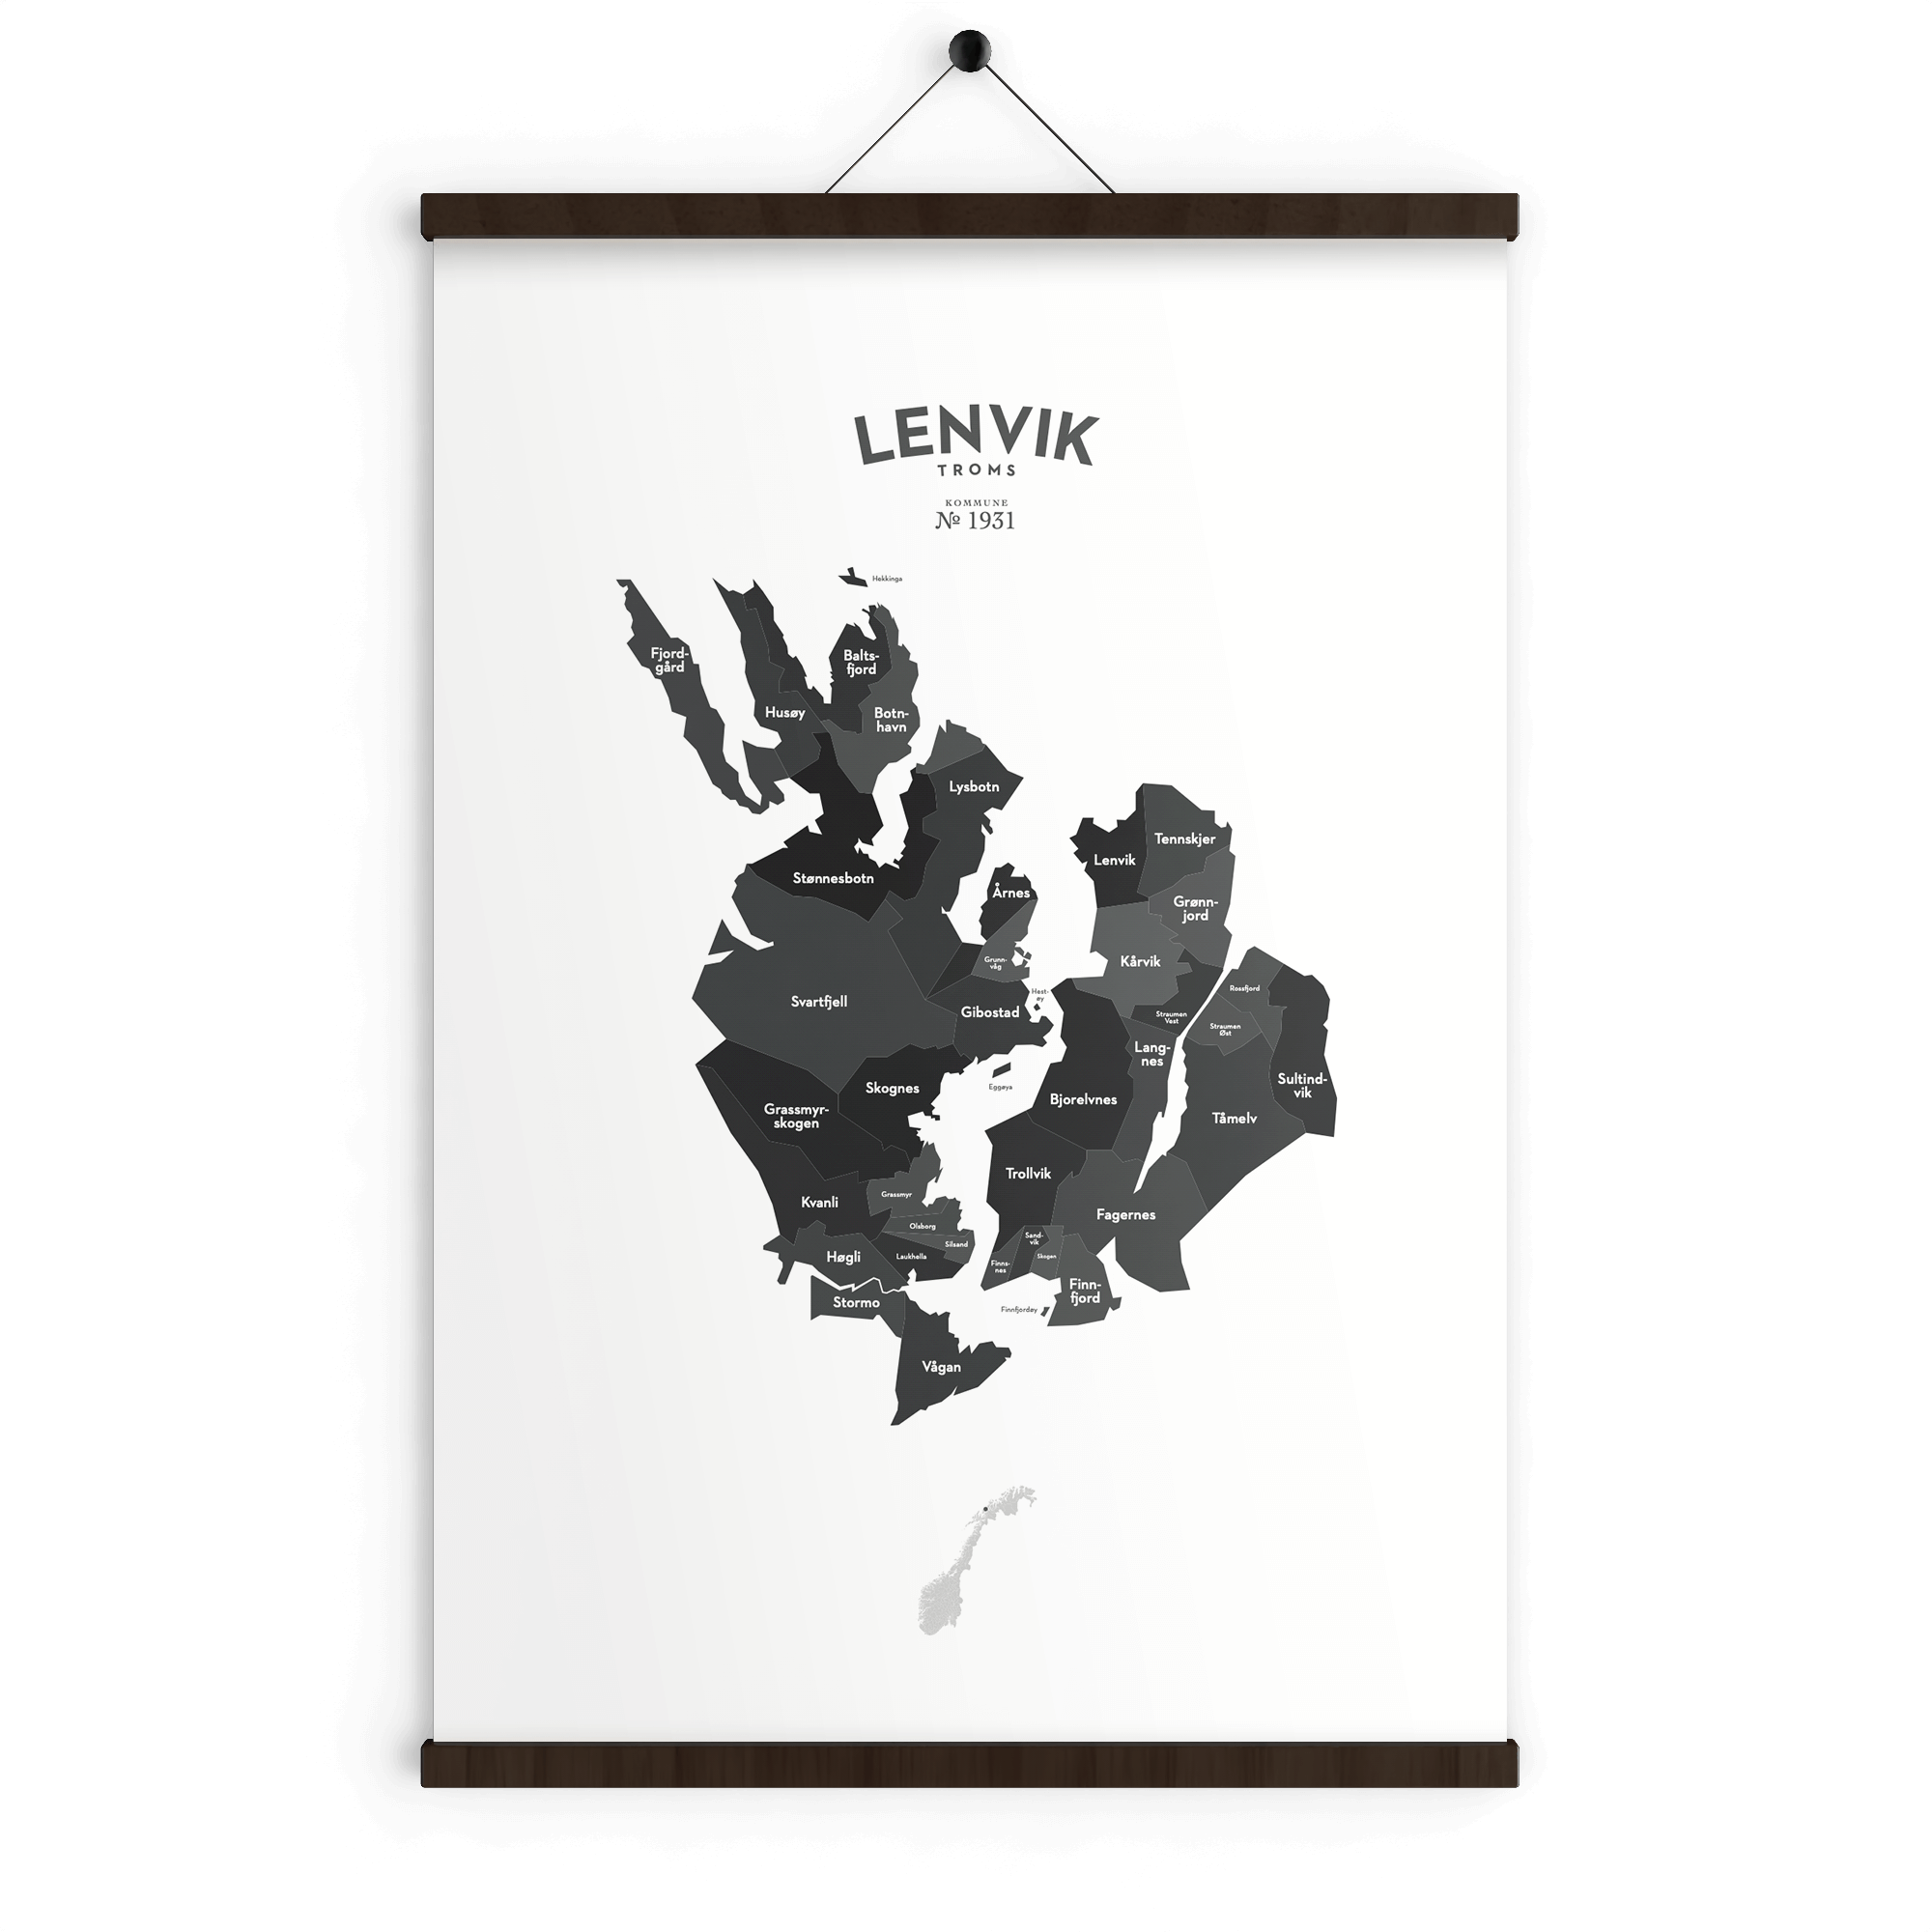 Lenvik